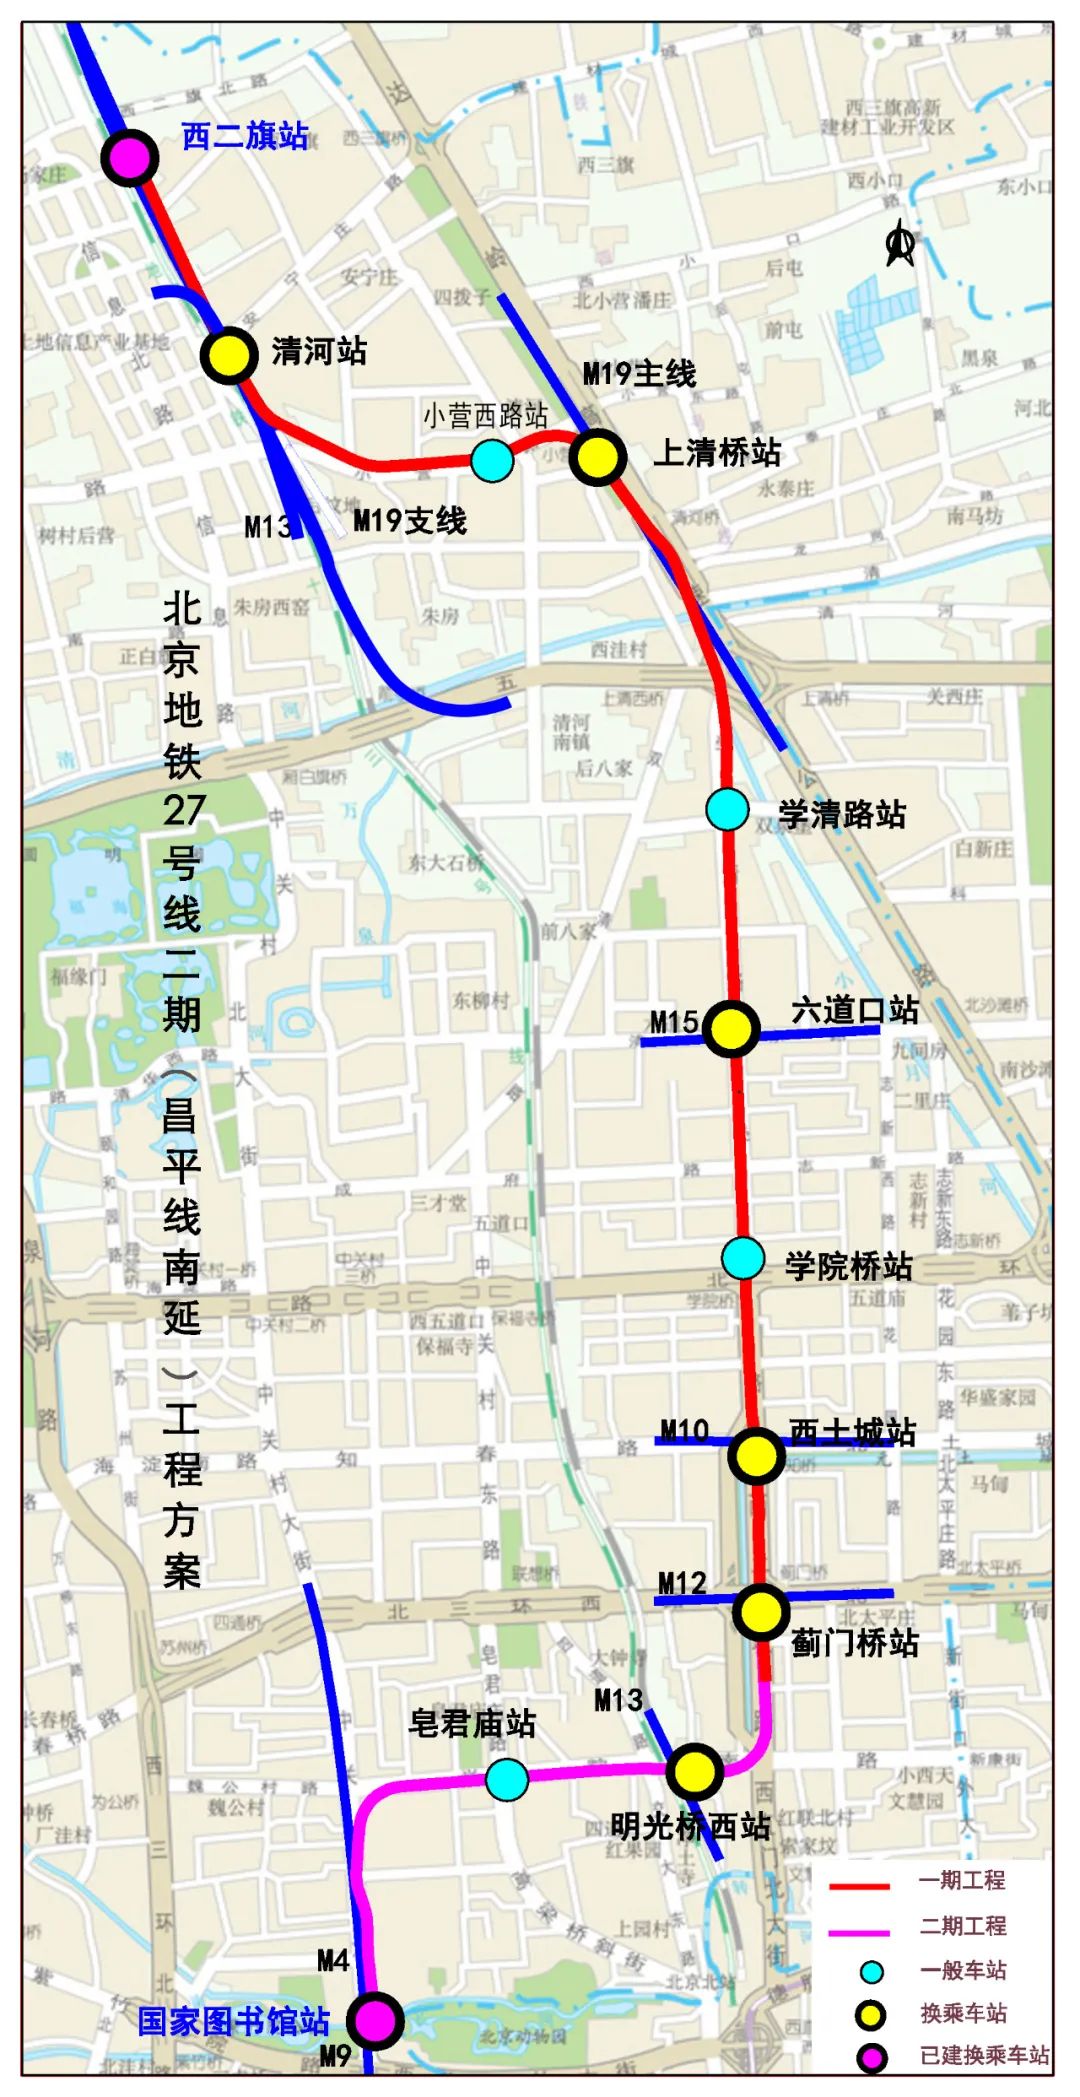 6公里的北京市轨道交通昌平线南延工程是地铁昌平线的三期工程,也是